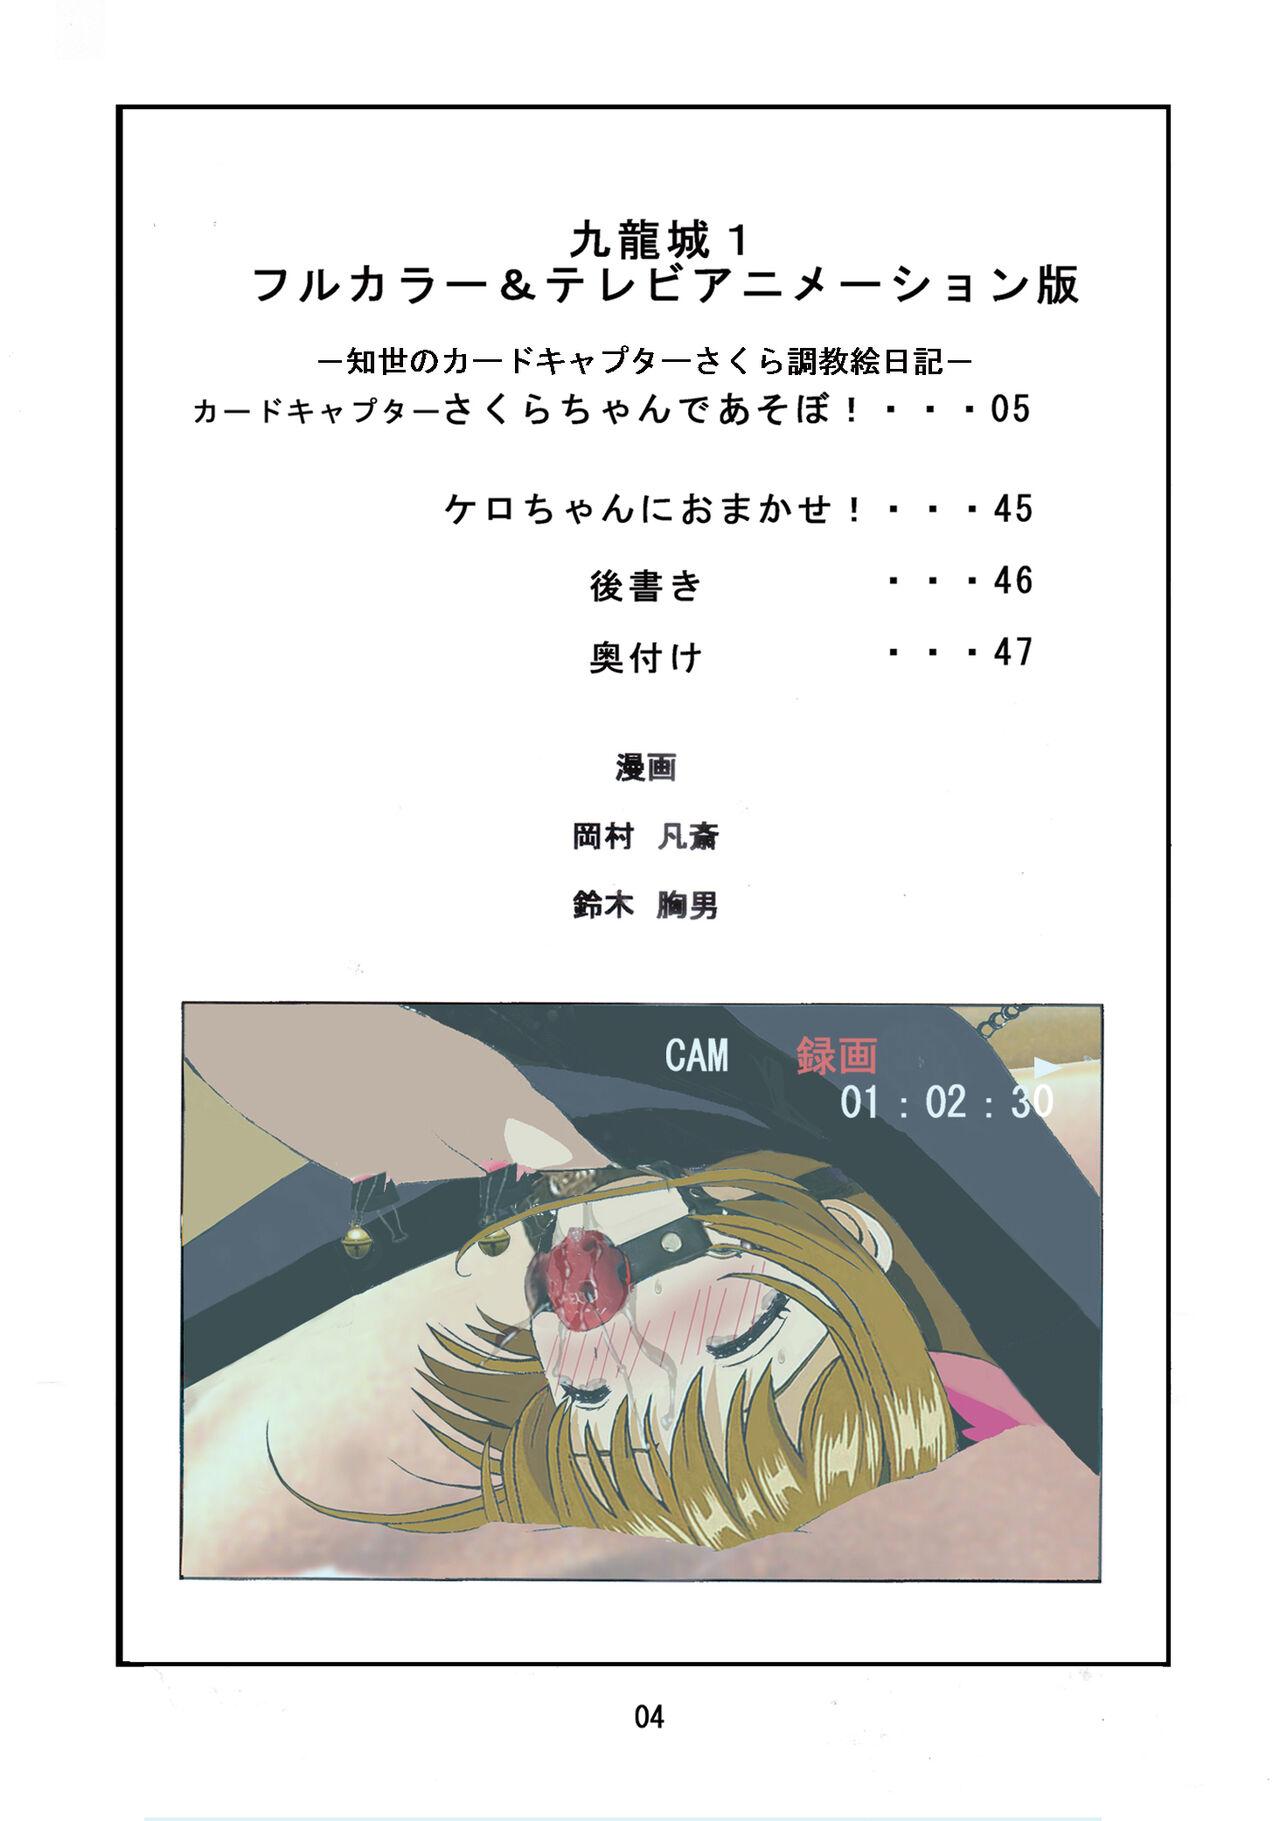 Casal Kuuronziyou 1 Full Color & TV Animation Ban - Cardcaptor sakura Sislovesme - Picture 3